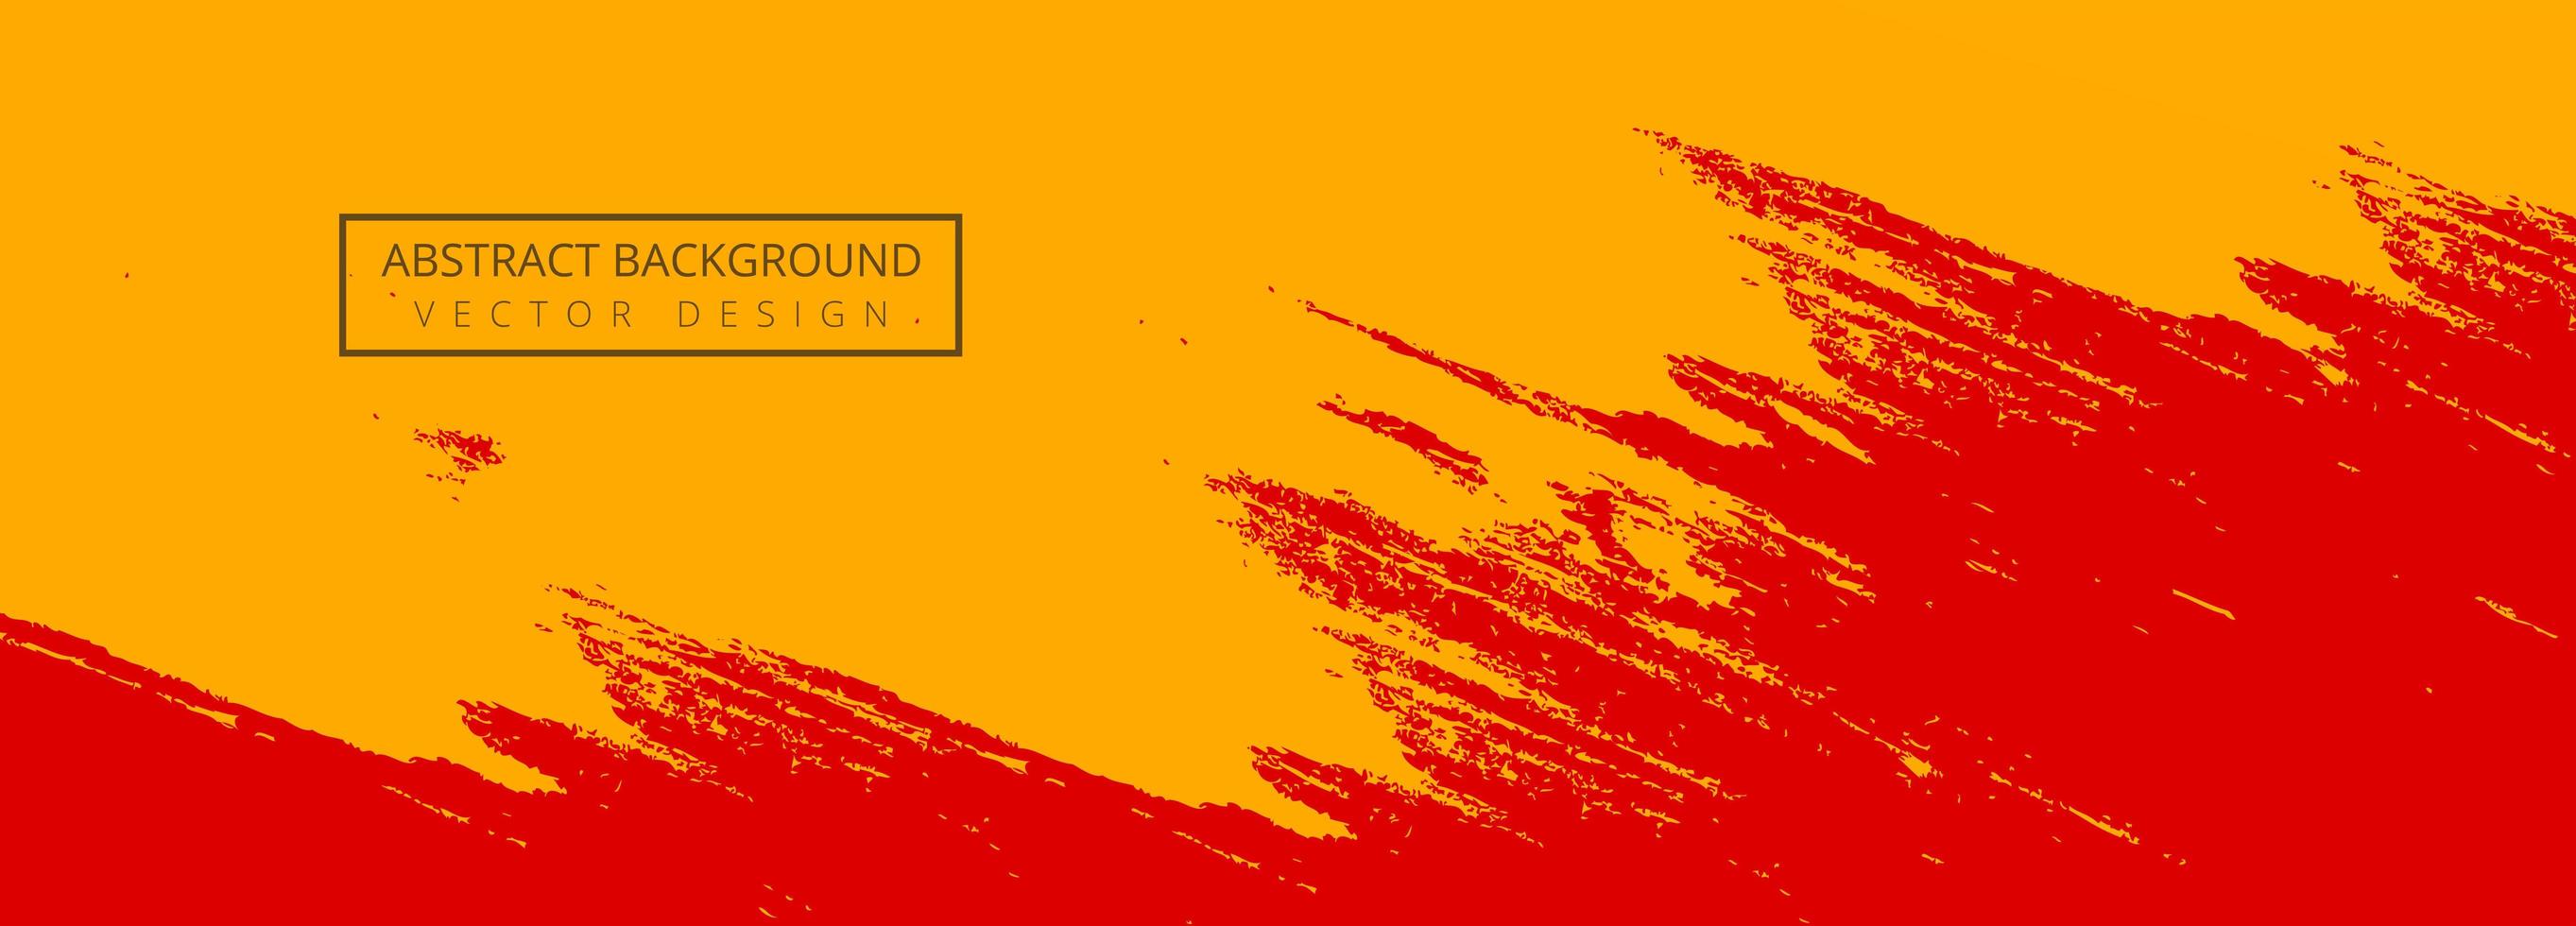 Banner de pincel de trazo de pintura roja, naranja abstracta vector